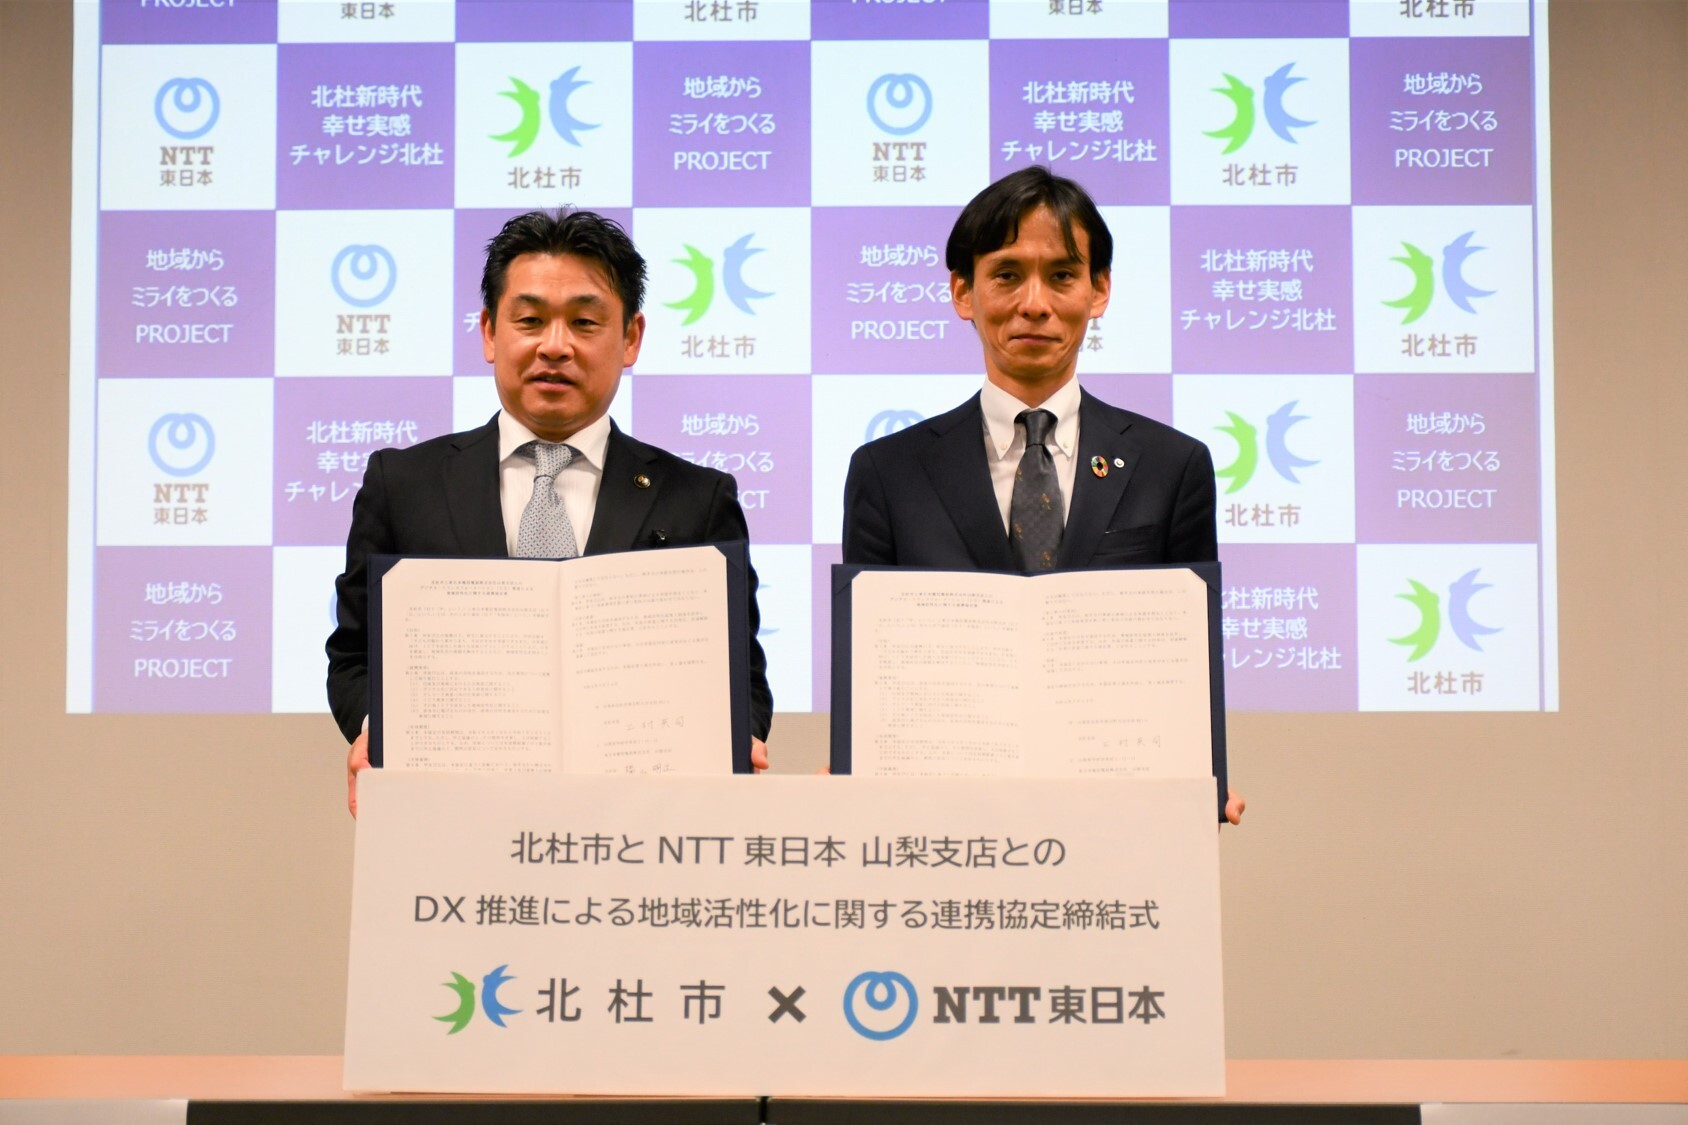 山梨県北杜市とNTT東日本 山梨支店とのDX推進による地域活性化に関する連携協定を締結しました